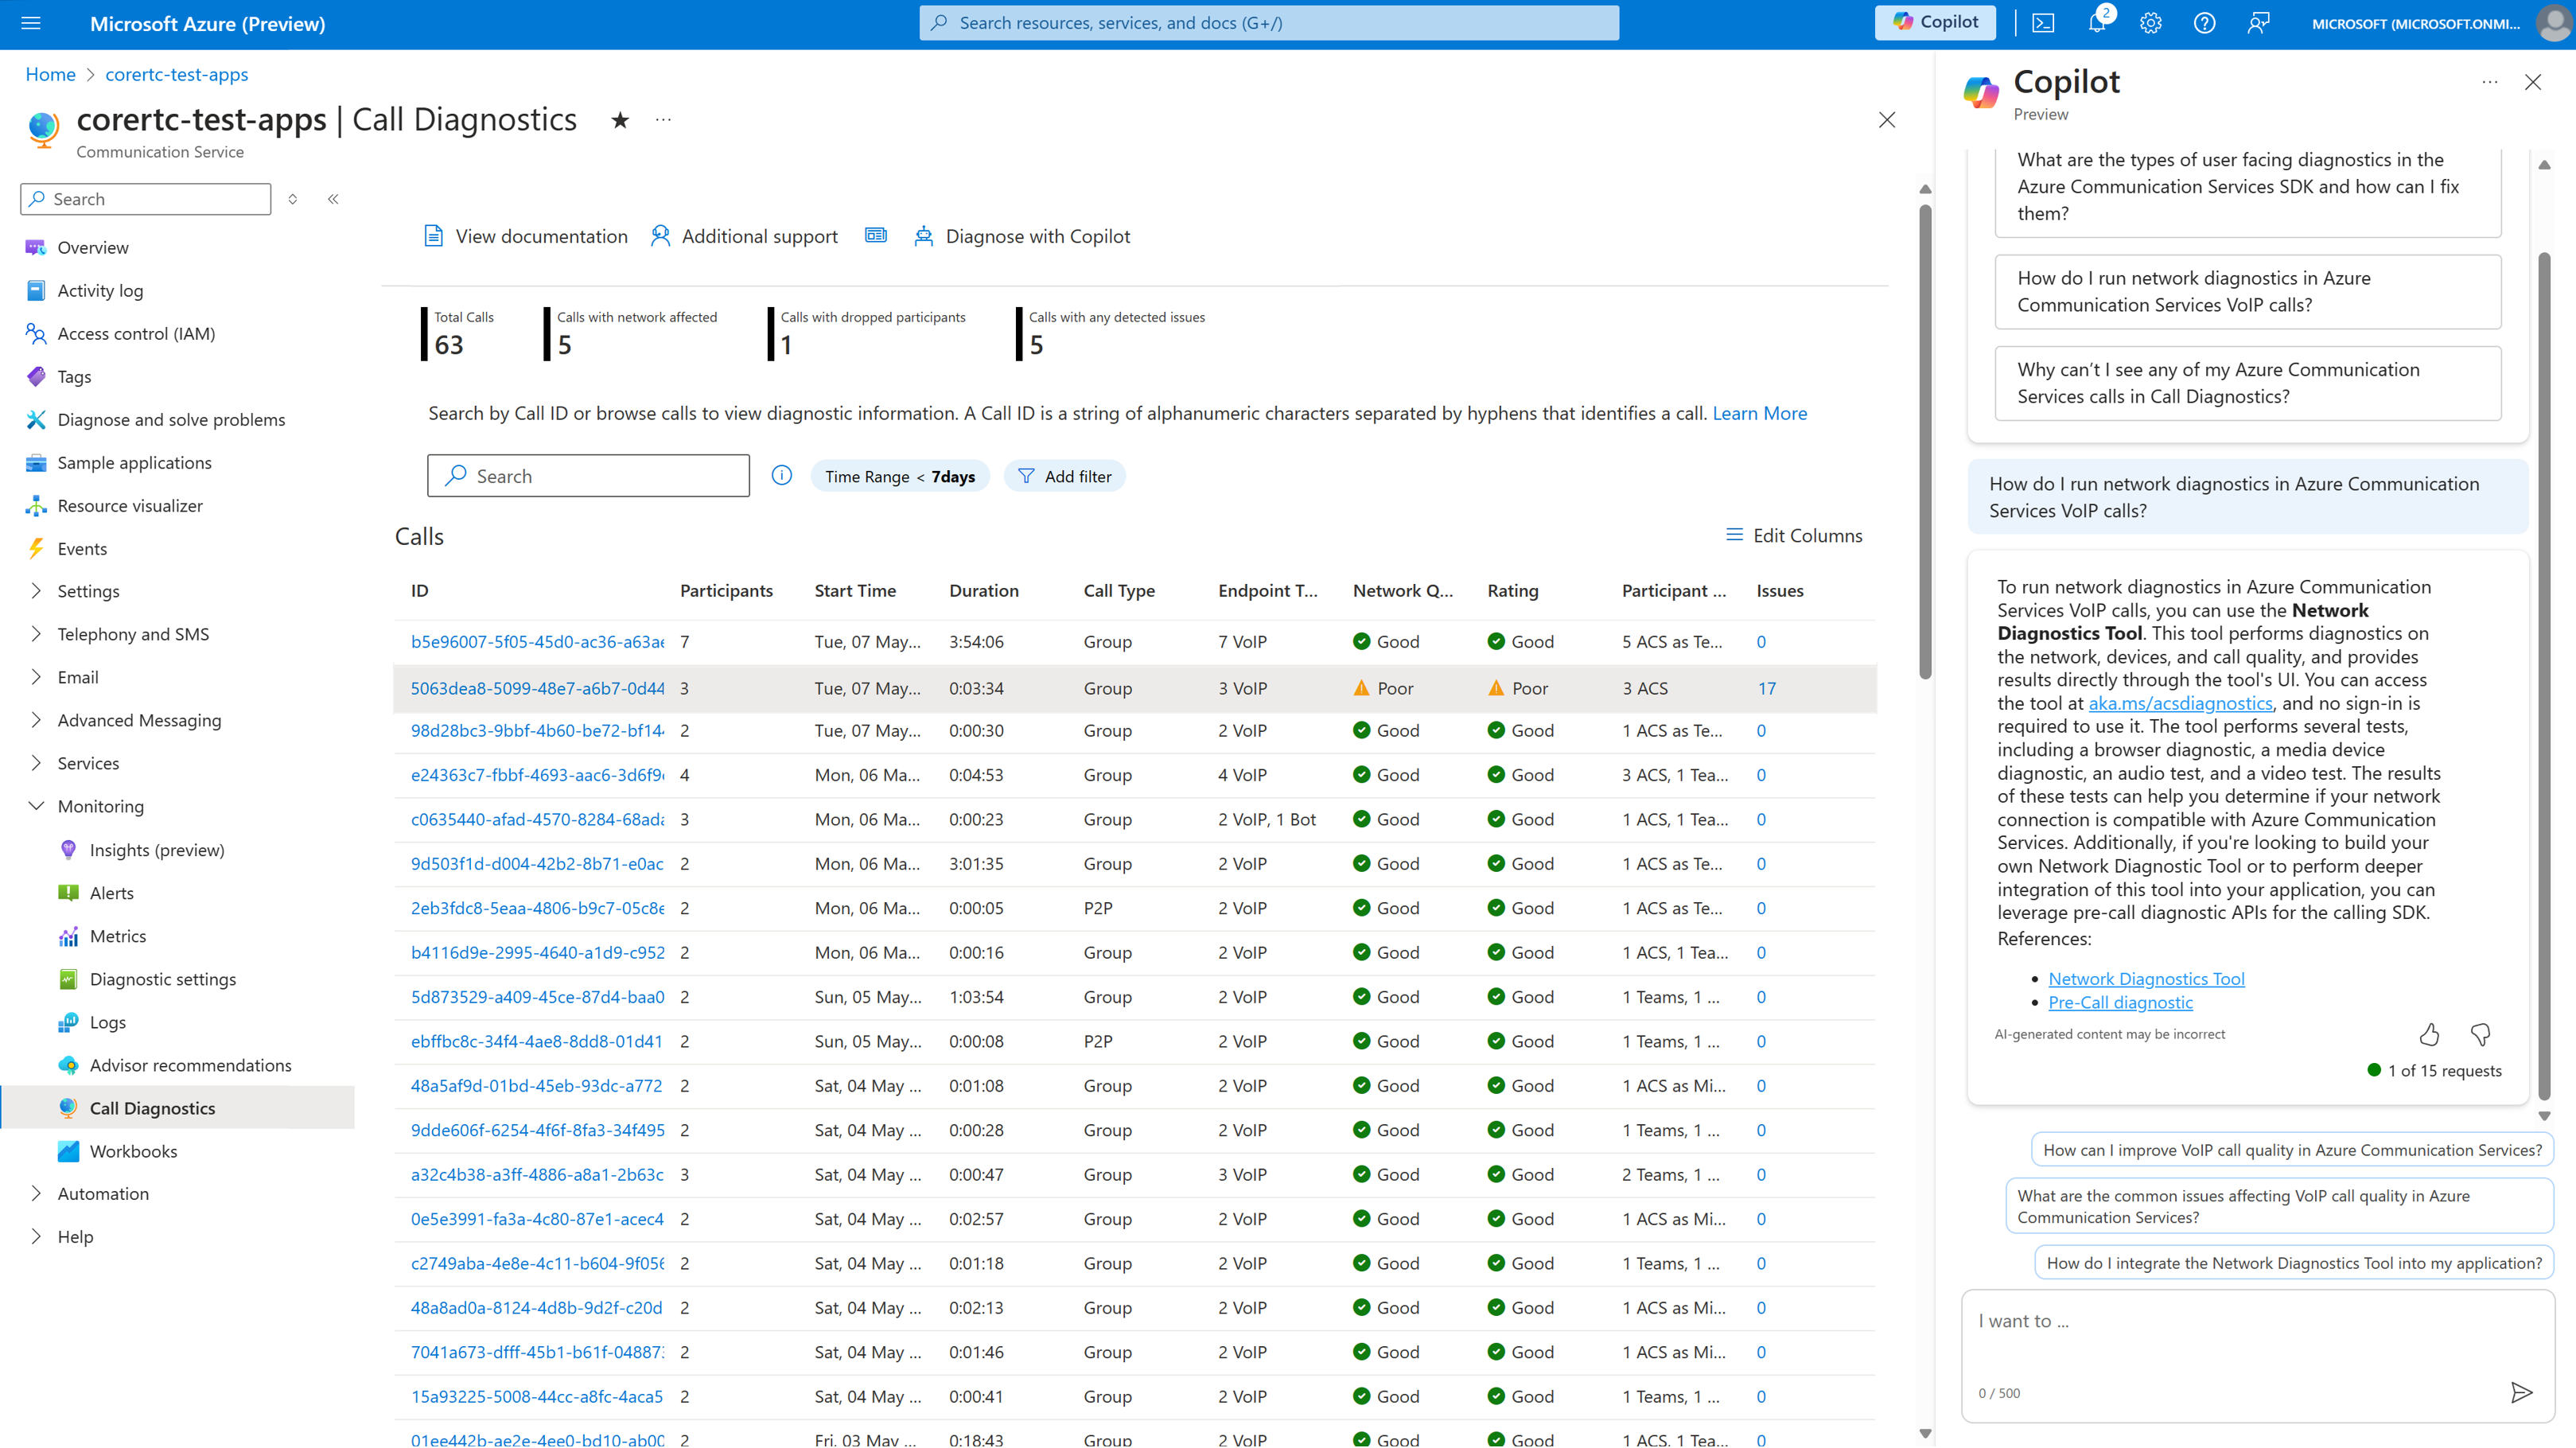 Recorte de pantalla de la búsqueda de llamadas de Call Diagnostics que muestra las llamadas recientes de su recurso Azure Communications Services y la respuesta de Copilot en Azure.